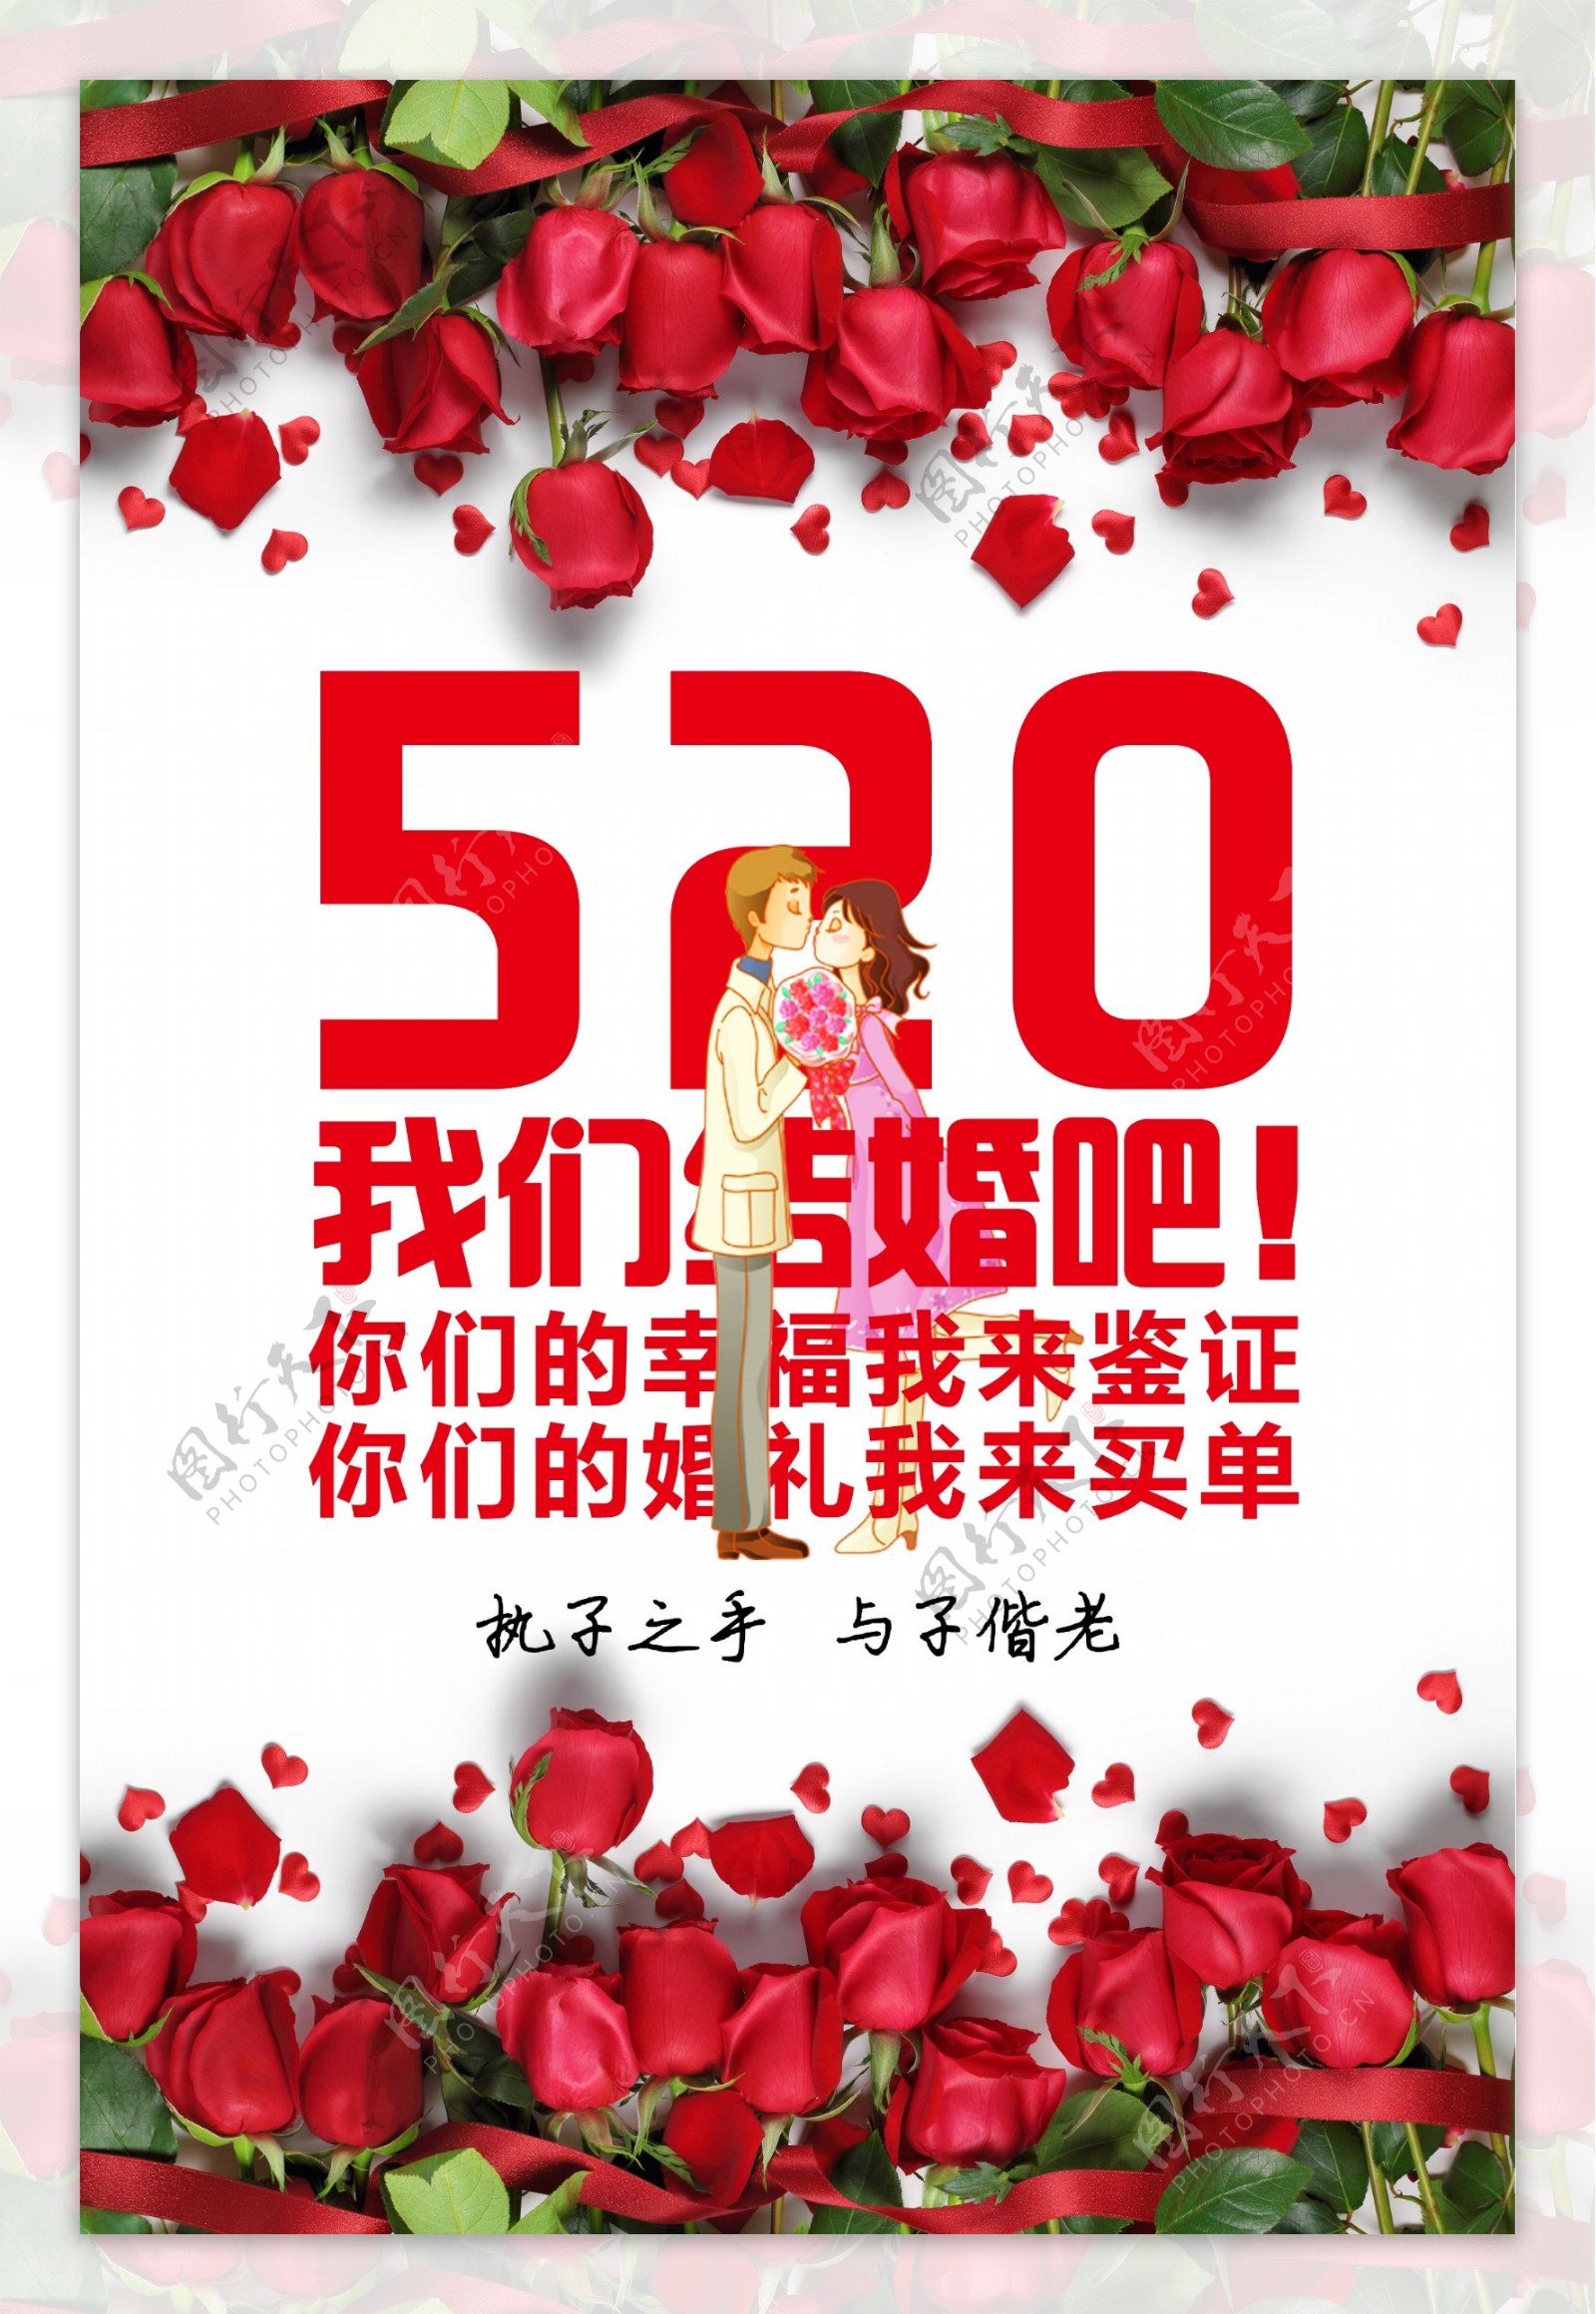 520情人节活动宣传海报展板